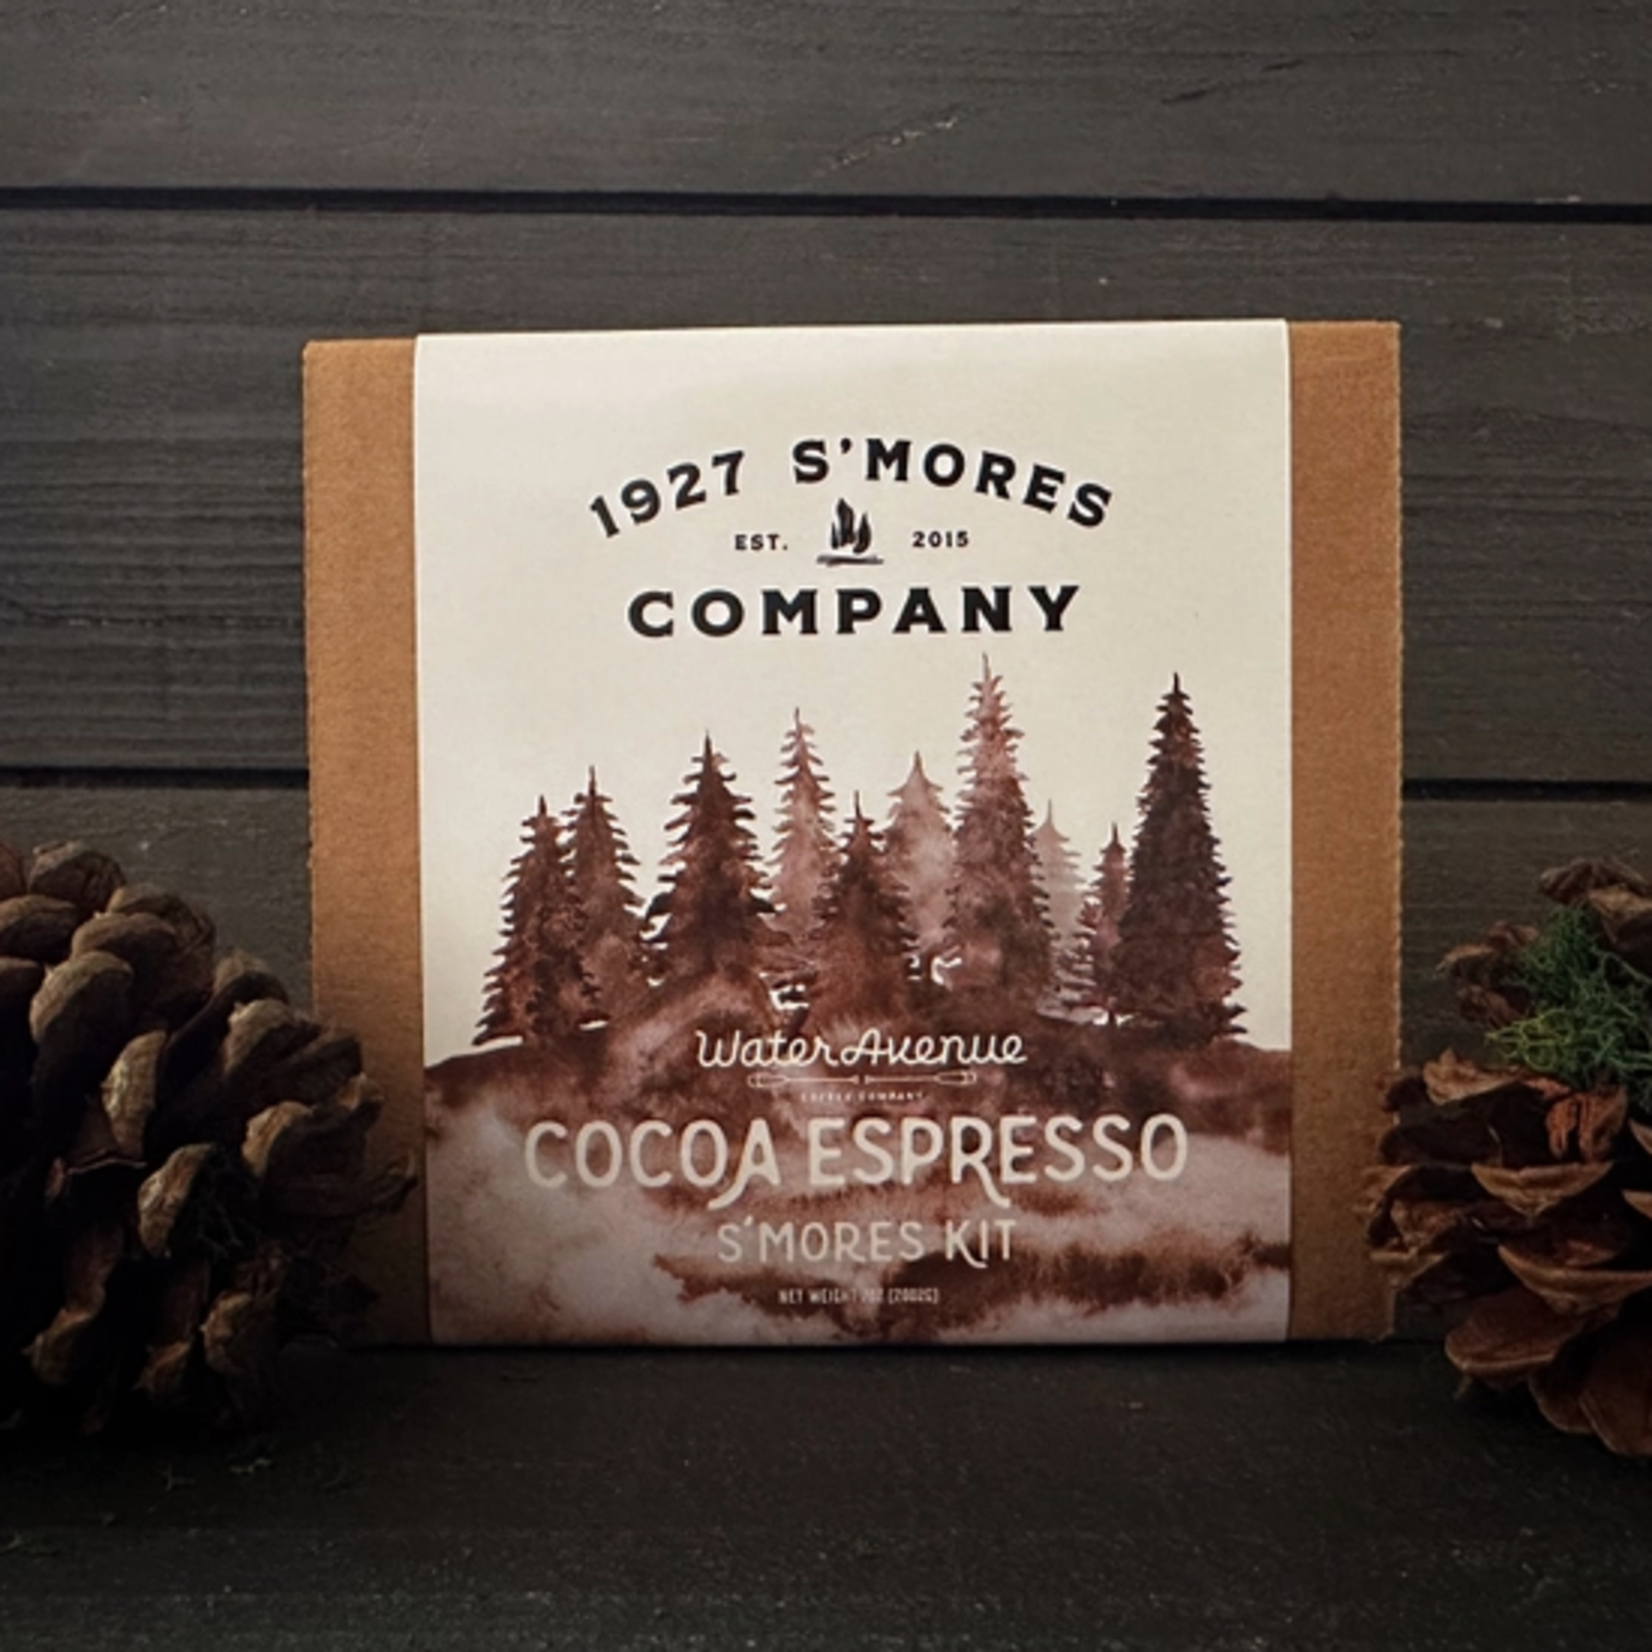 Chocolate Cocoa Espresso S'Mores Kit